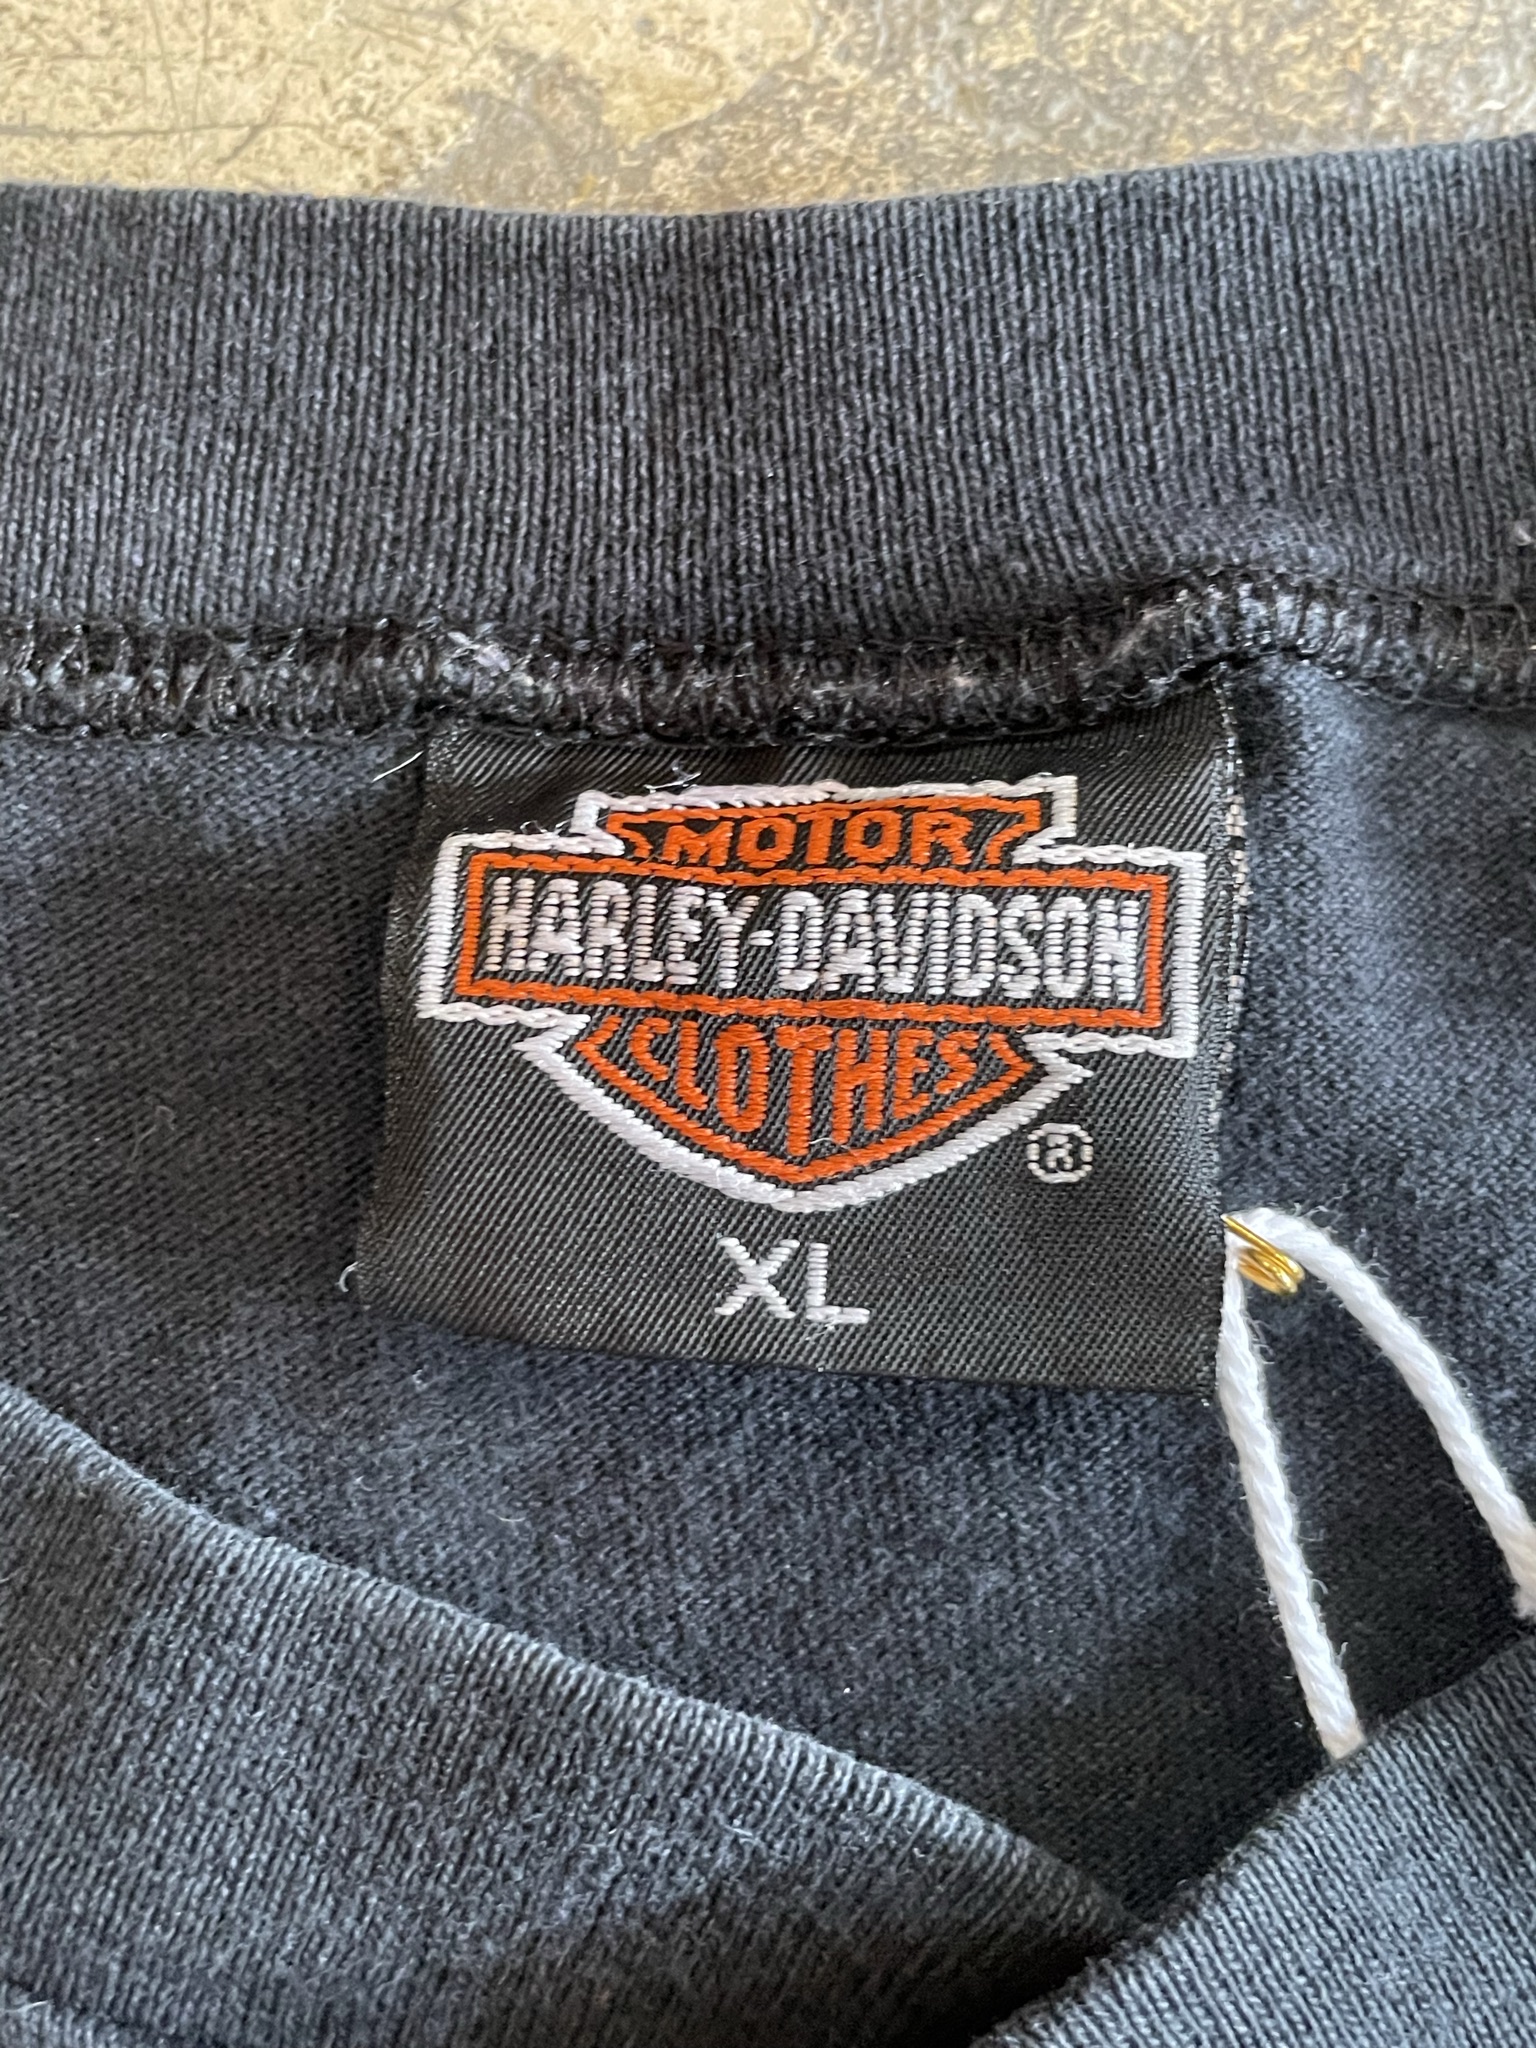 90’s Harley-Davidson Tshirt 古着 us古着 アメカジ ハーレーダビッドソン tシャツ ヘンリーネック | us古着